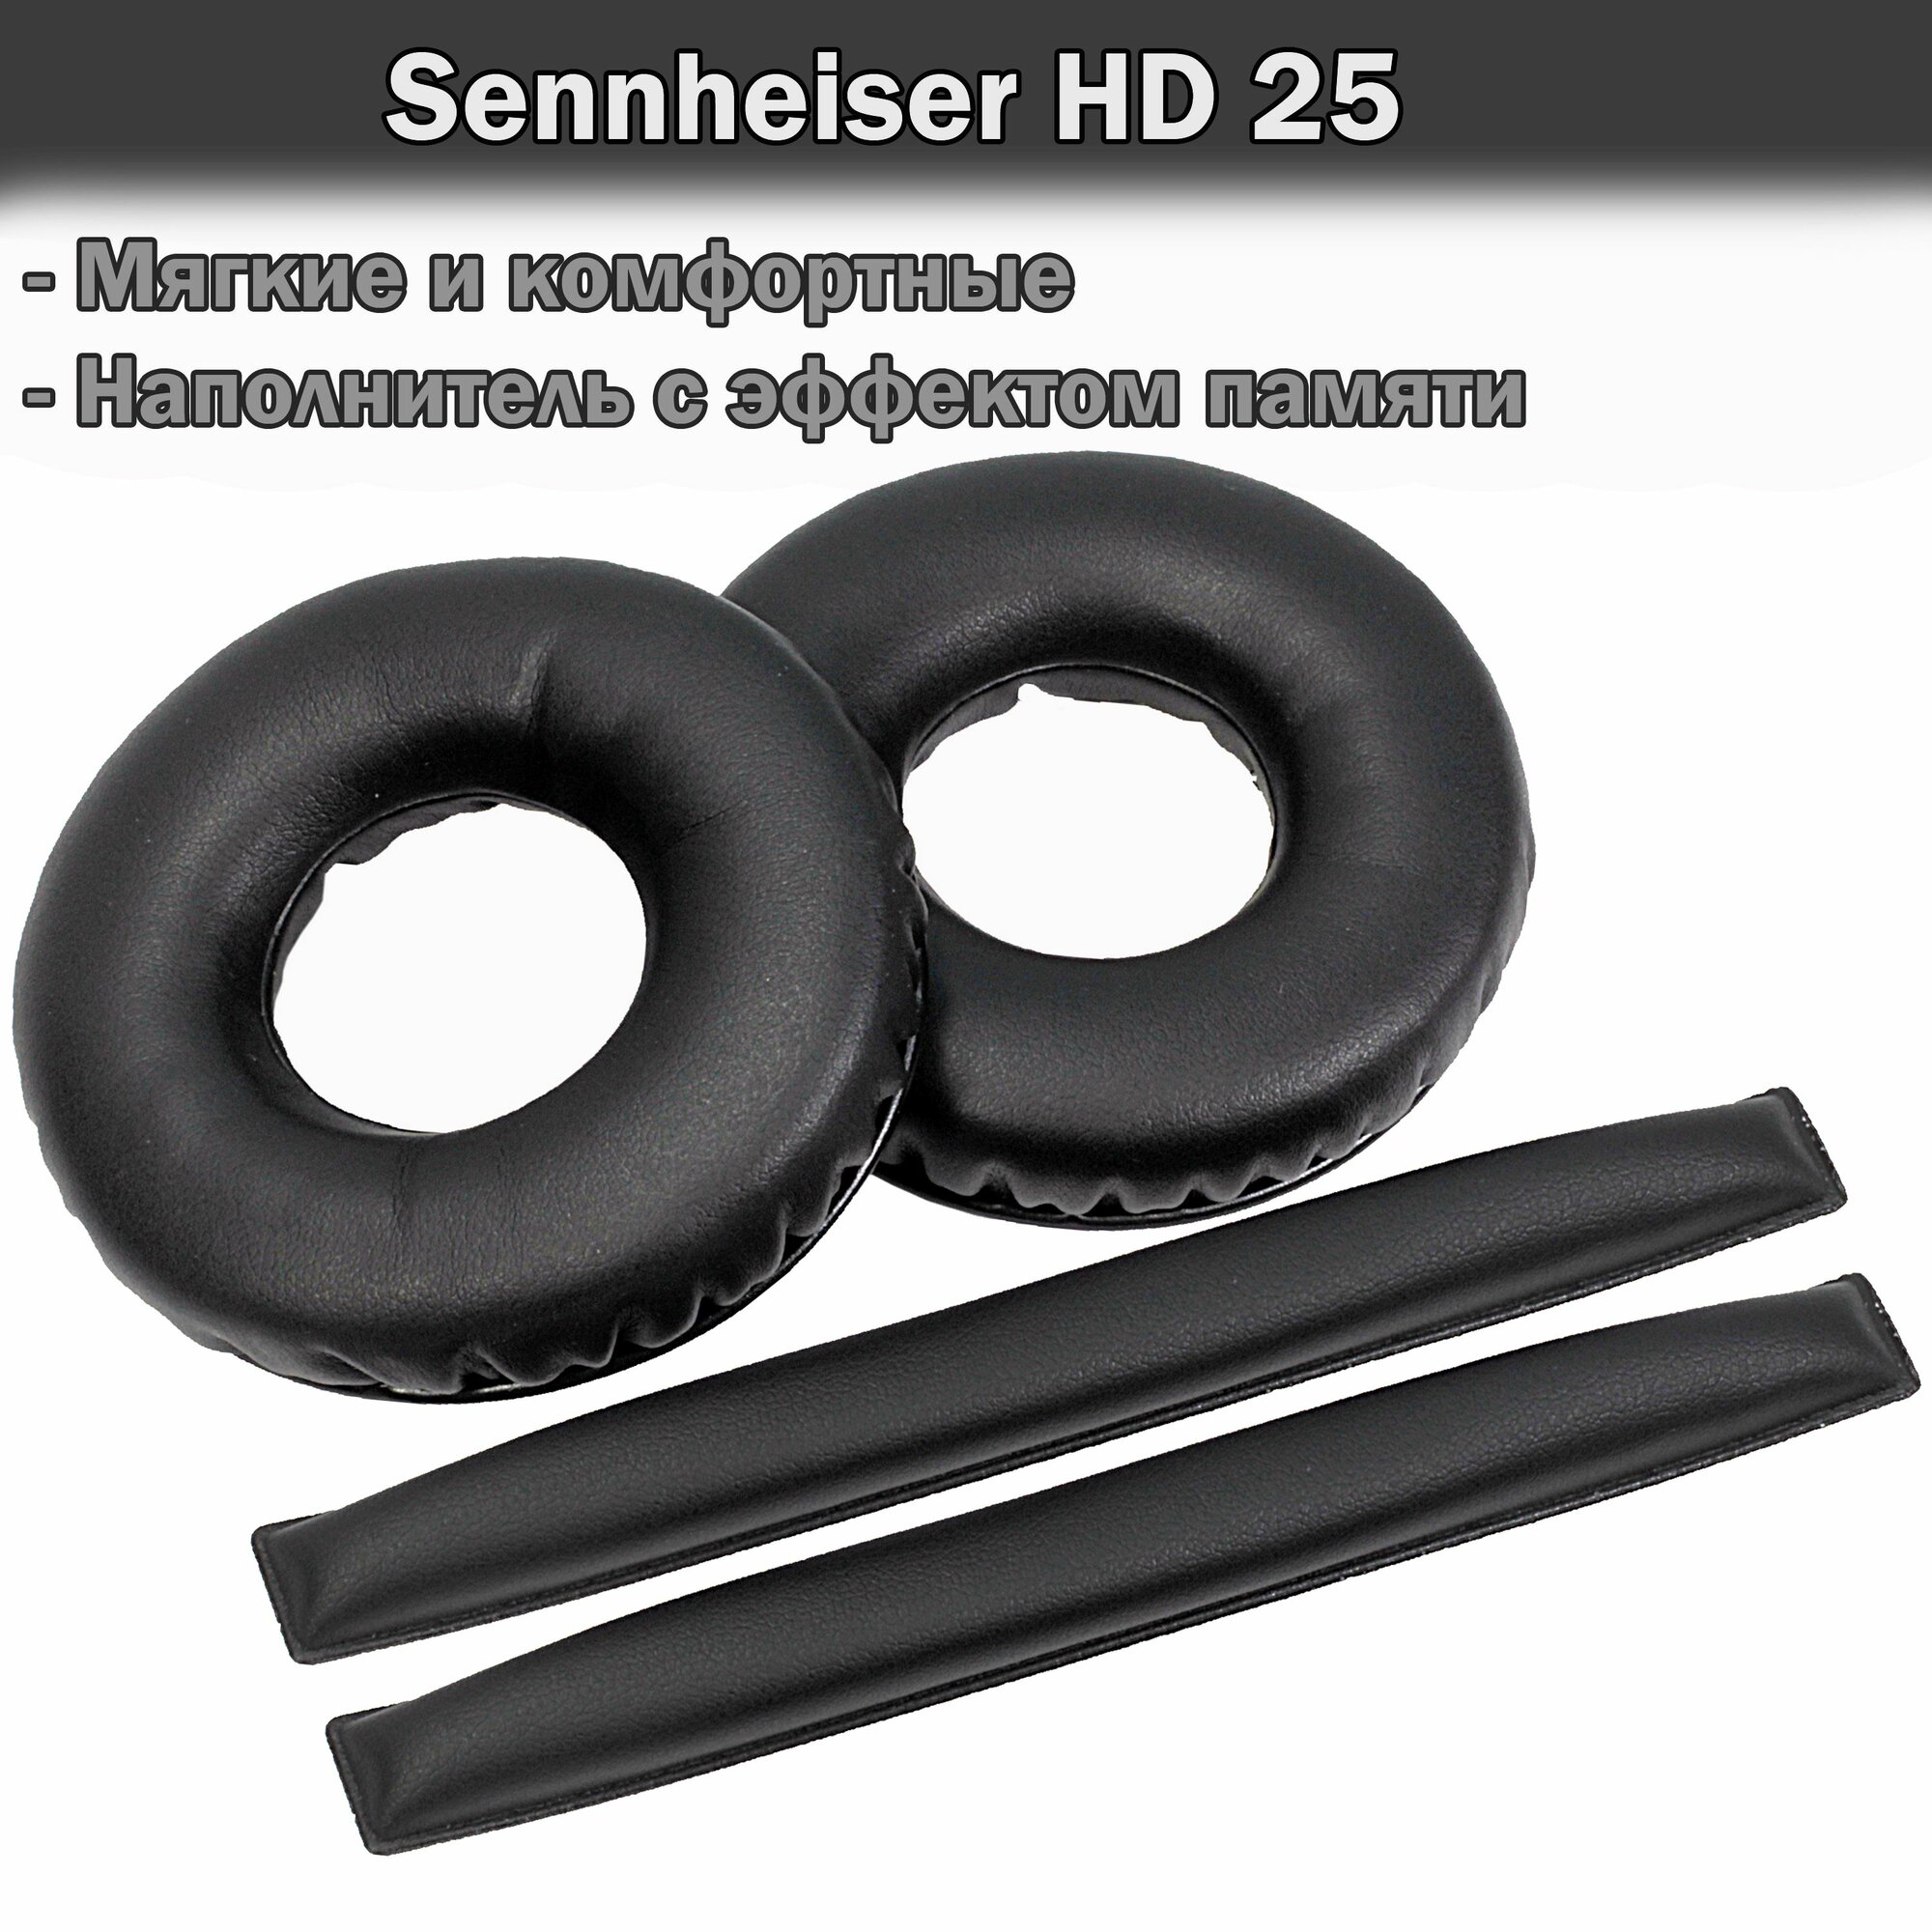 Амбушюры и оголовье Sennheiser HD 25 черные